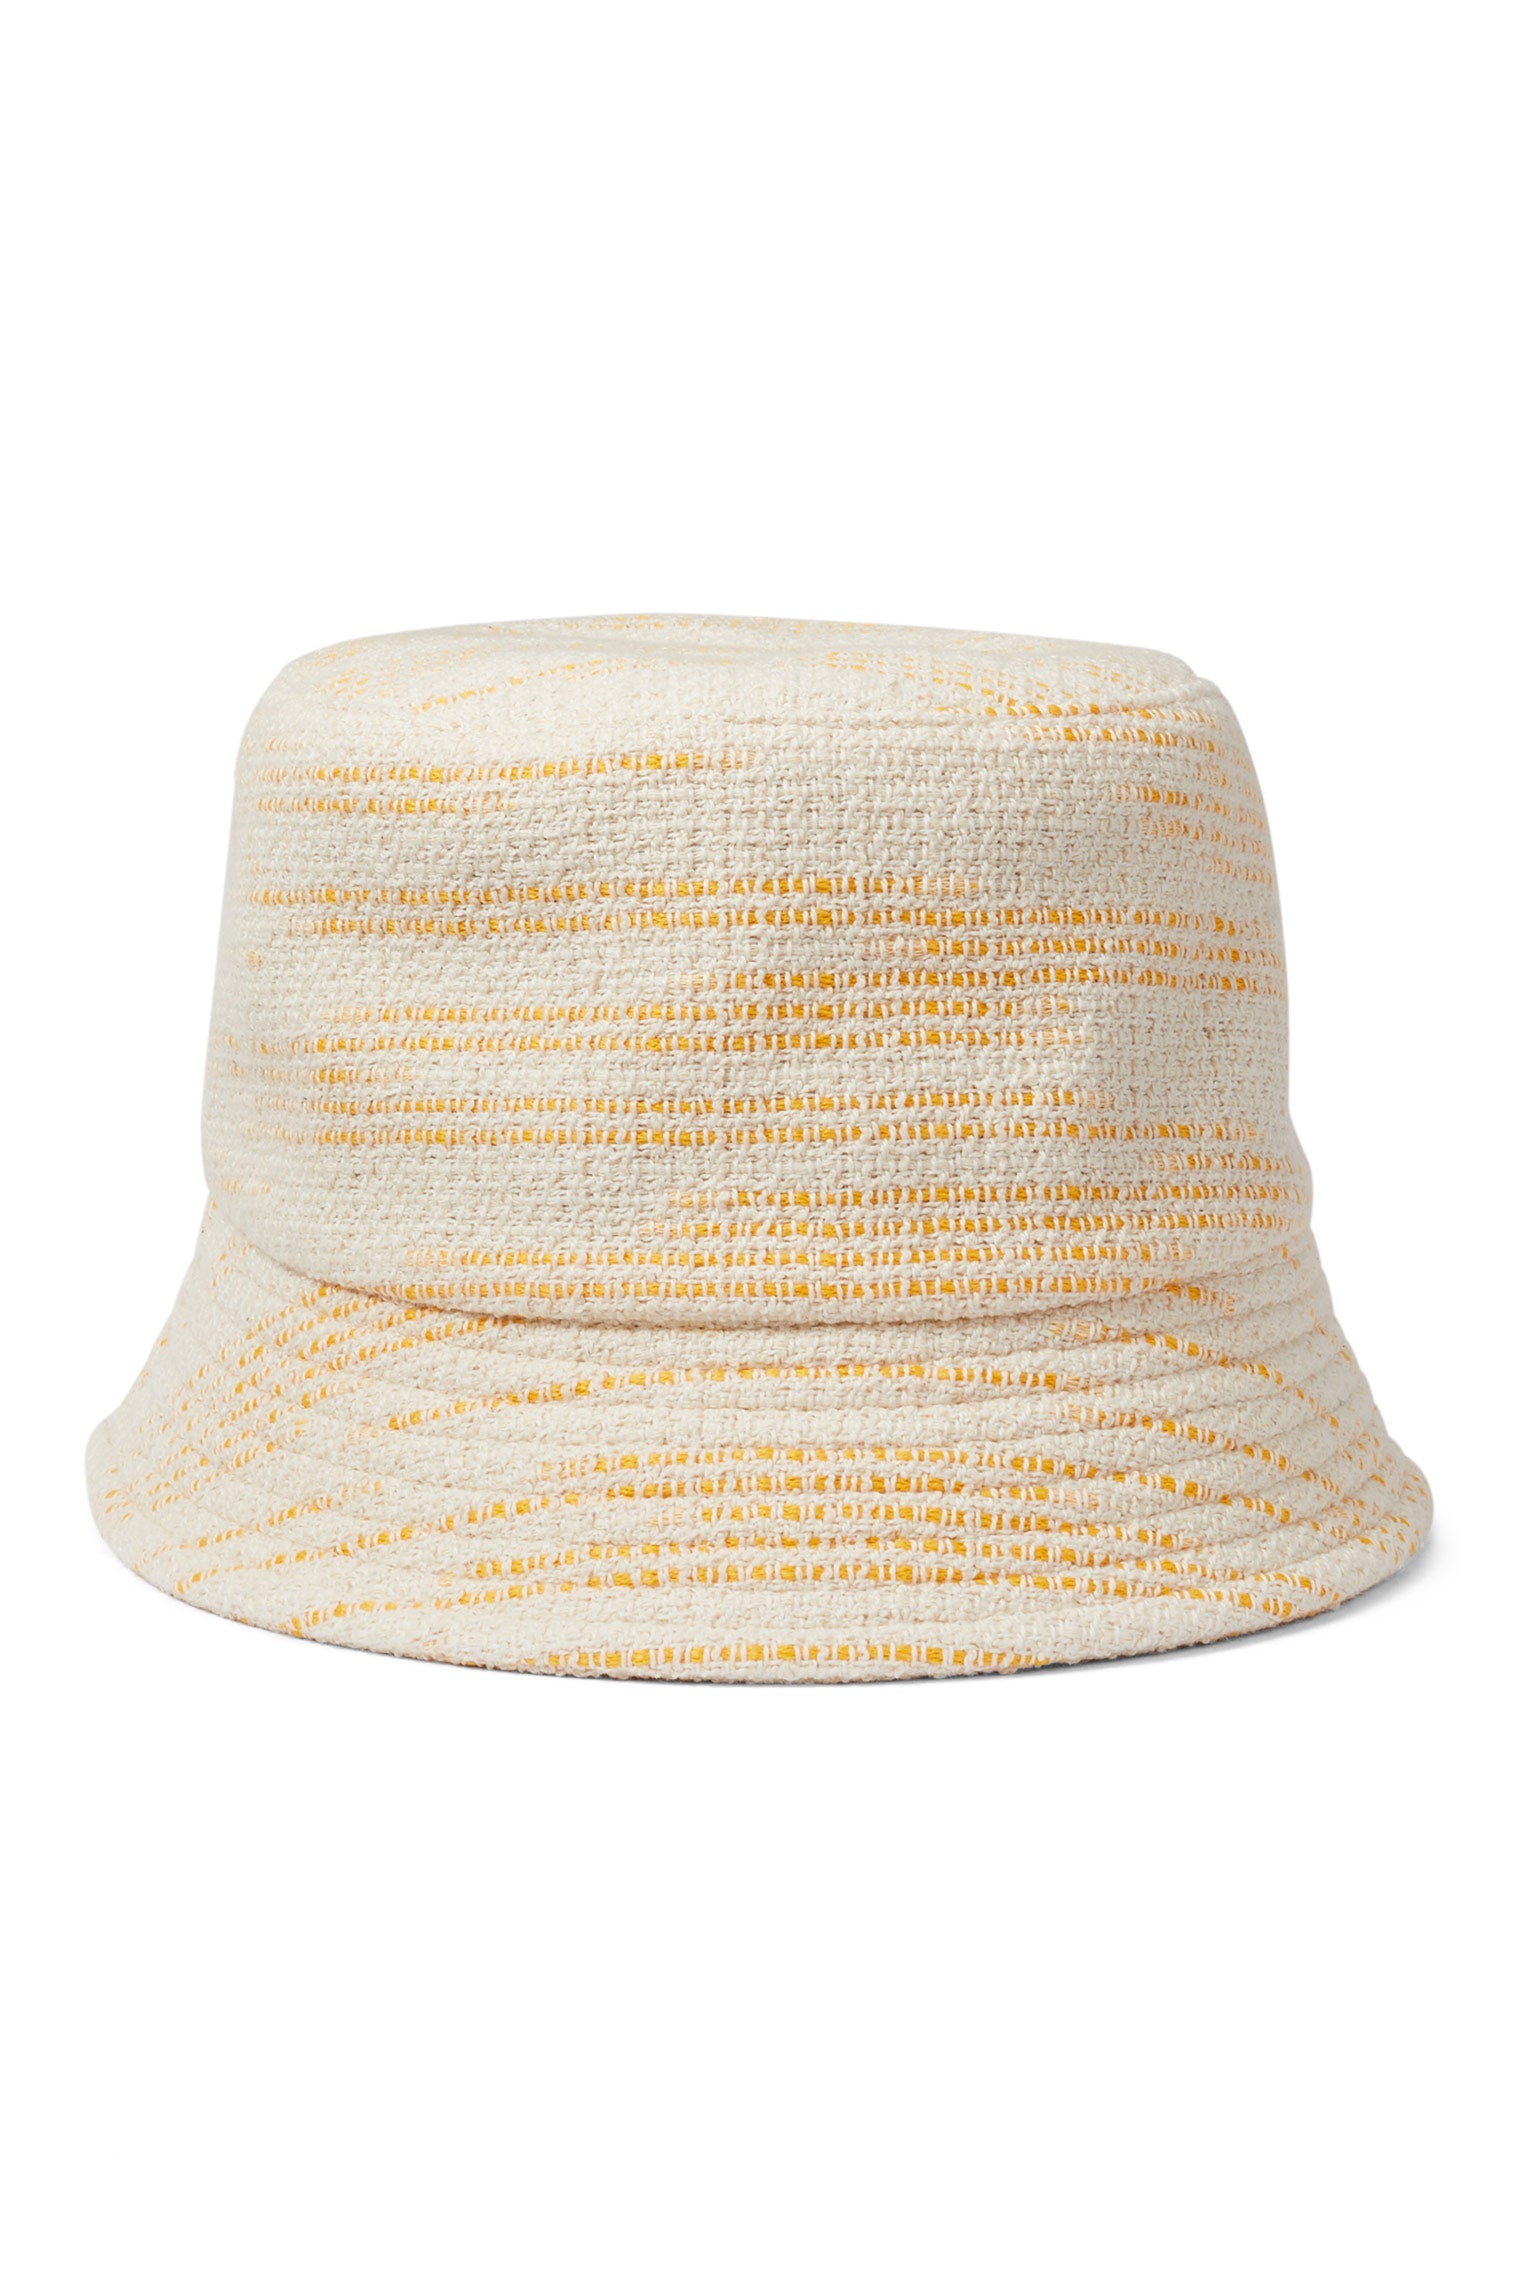 Rye Yellow Bucket Hat - Womens Featured - Lock & Co. Hatters London UK